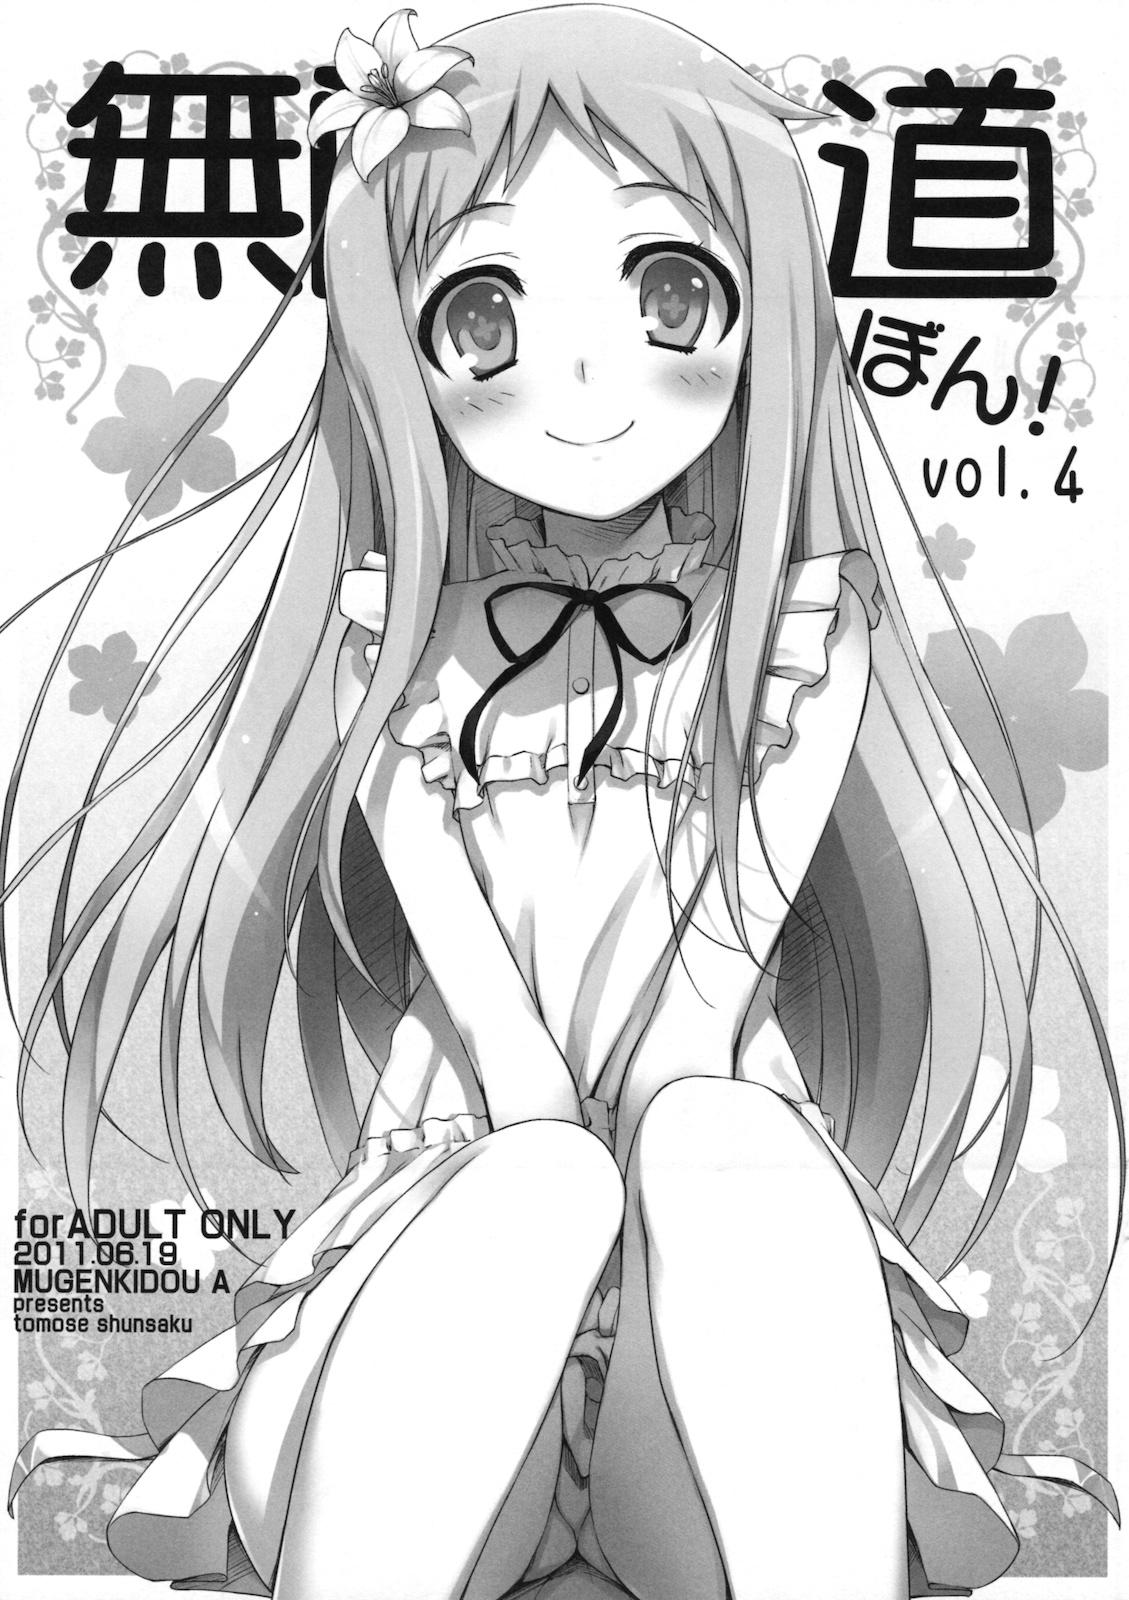 Retro Mugenkidou bon! vol.4 - Ano hi mita hana no namae wo bokutachi wa mada shiranai Web Cam - Page 1